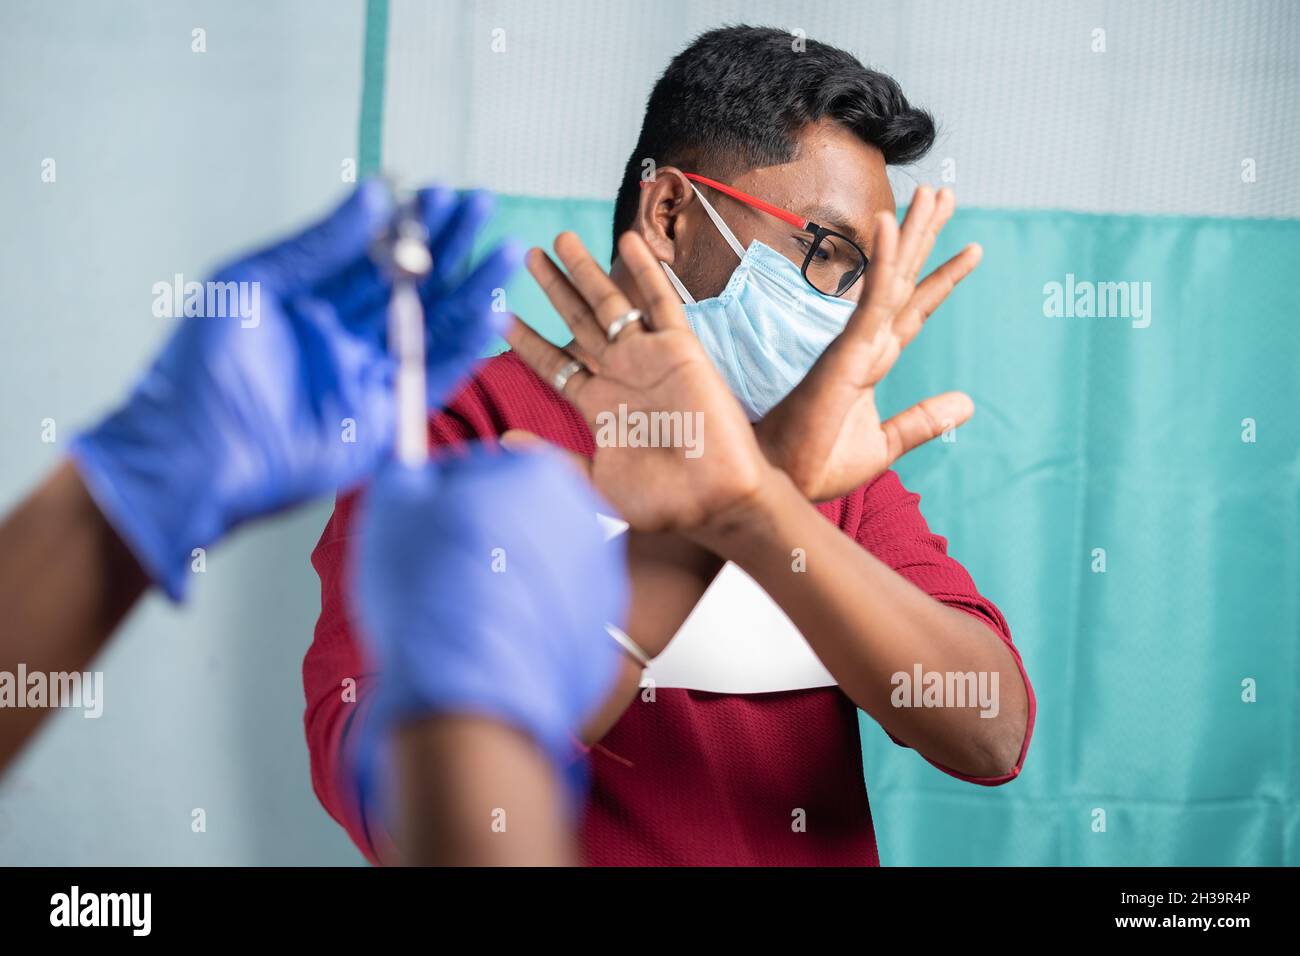 Selektive Fokussierung auf einen Mann mit medizinischer Gesichtsmaske, der Nein zur Covid-19- oder Coronavirus-Impfung sagt, indem er dem Arzt Handgesten zeigt - Konzept des Impfstoffs Stockfoto